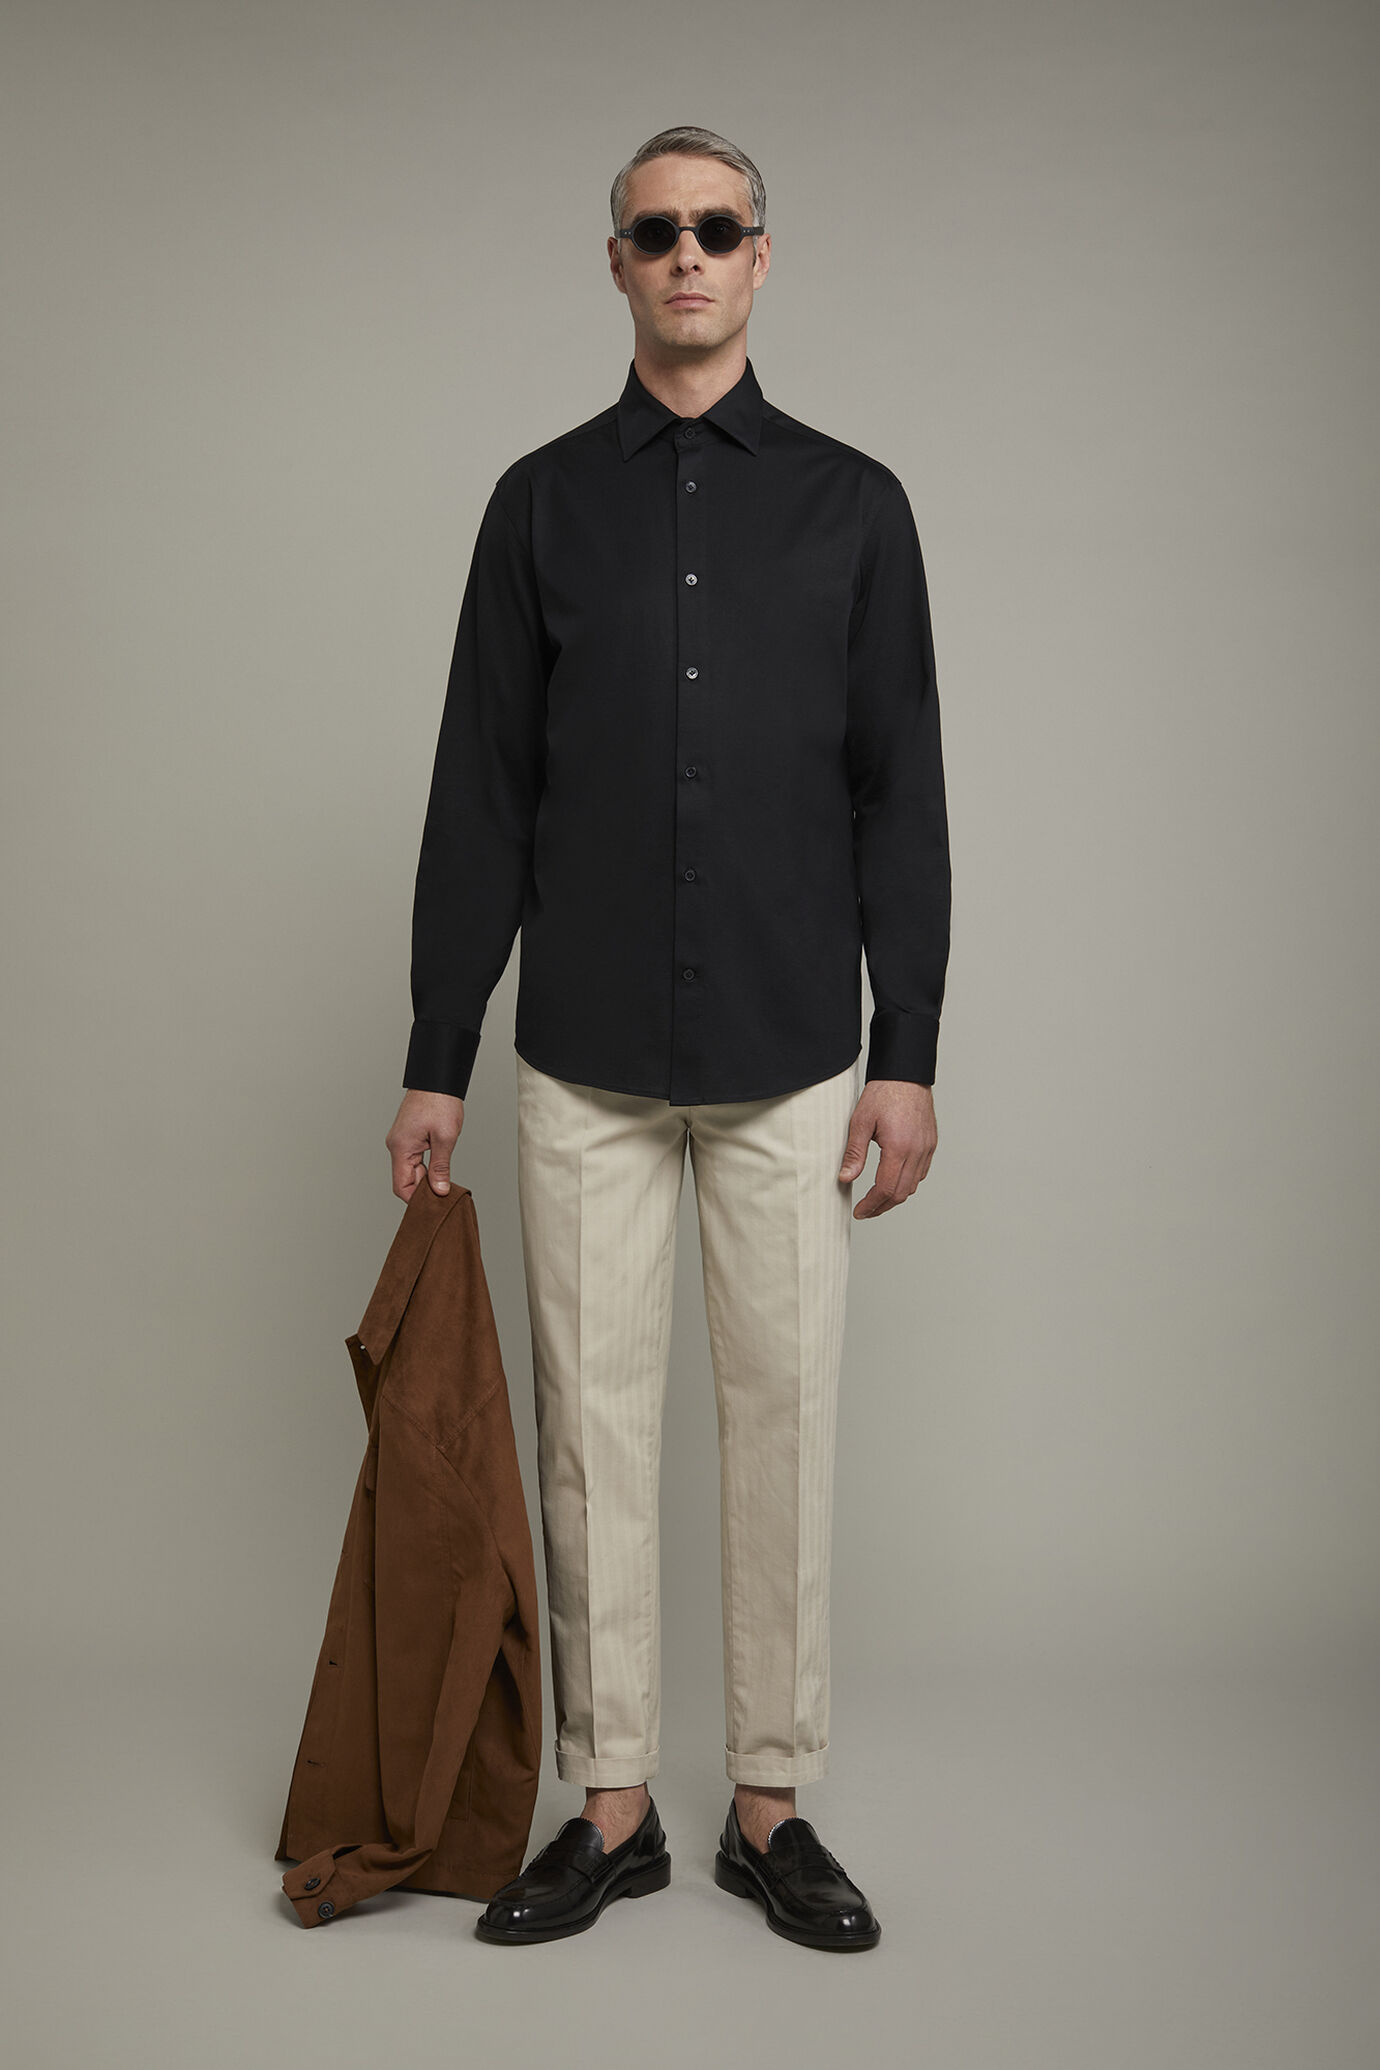 Polo camicia uomo a manica lunga con collo classico 100% cotone piquet regular fit image number 0